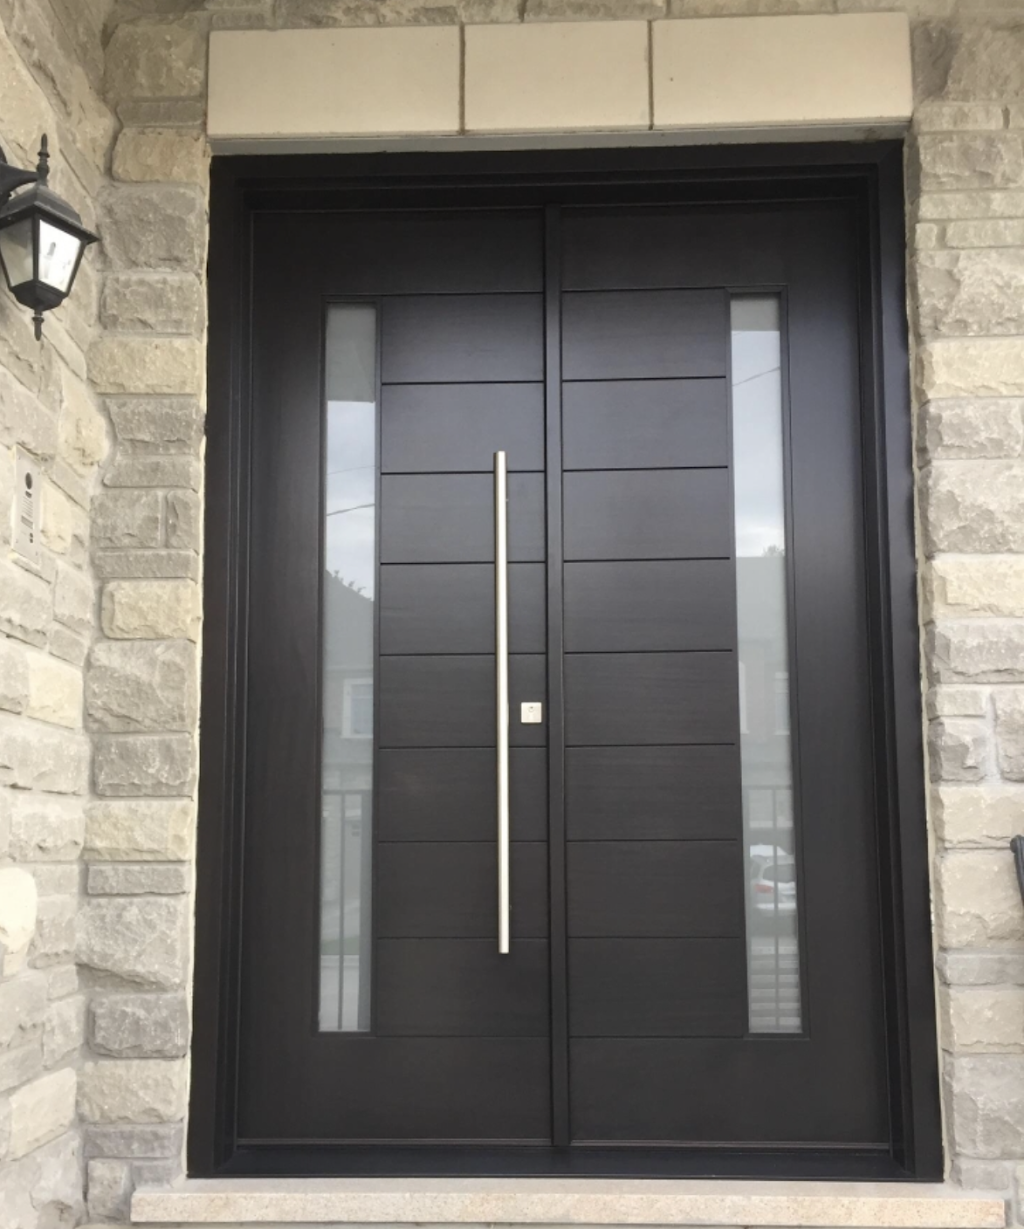 Canada Door Supply | hardware store | 200 Edgeley Blvd Unit #25, Concord, ON L4K 3Y8, Canada | 4166281297 OR +1 416-628-1297